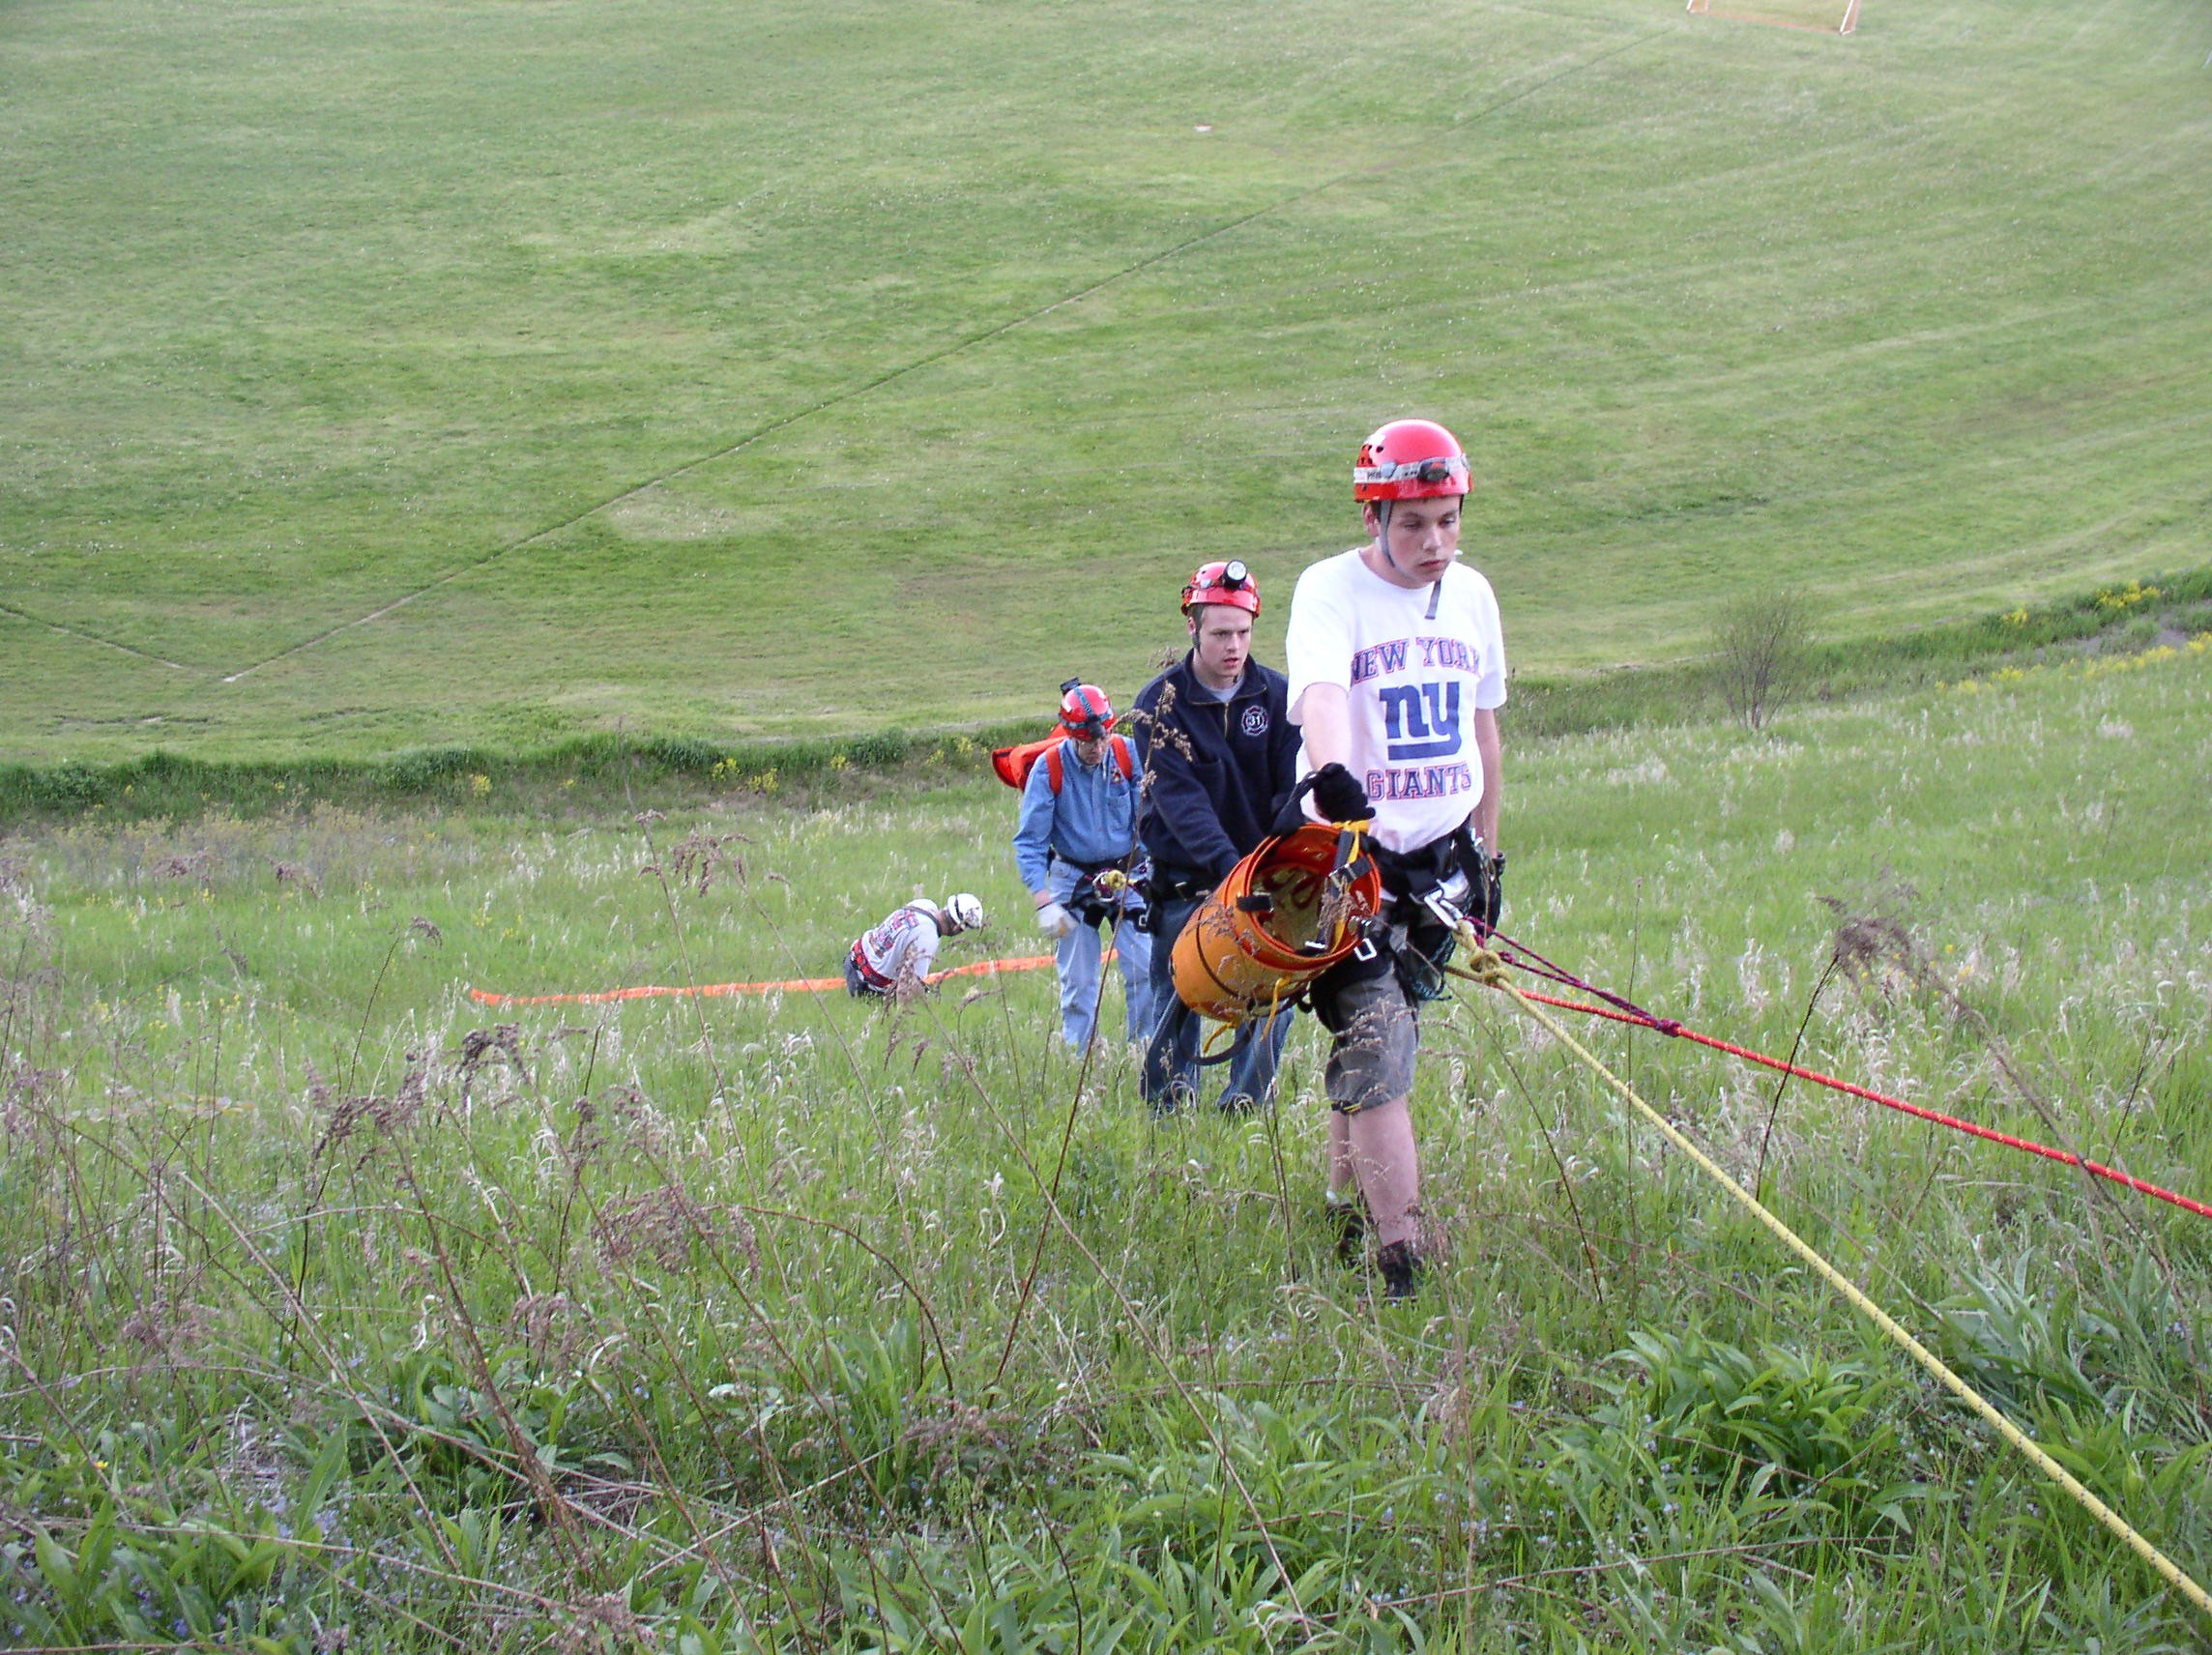 05-18-05  Training - Rope Rescue